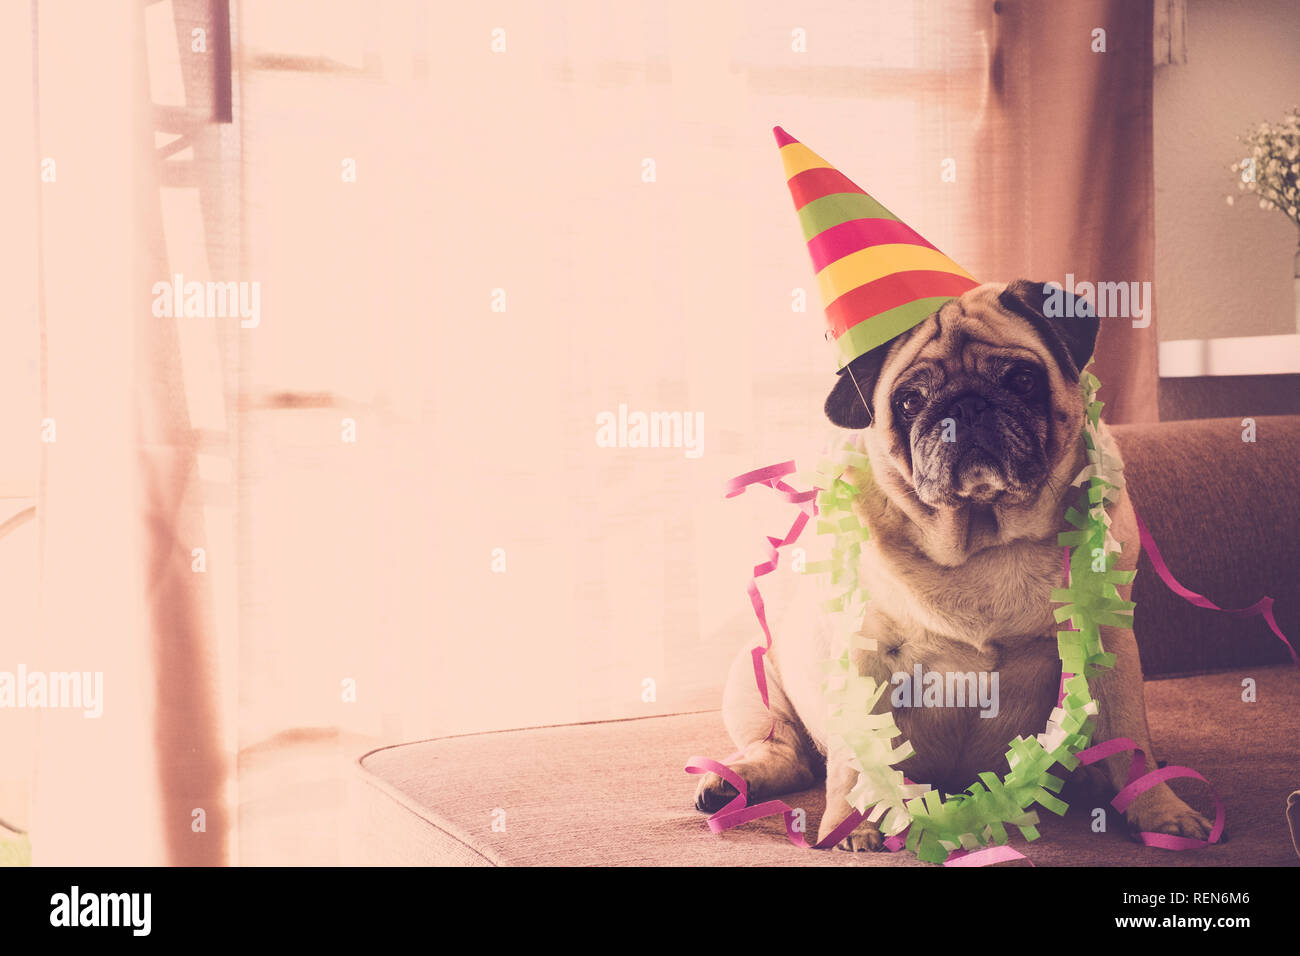 Anniversaire celenration concept drôle de carnaval nouvelle année Noël avec crazy dog pug couleur avec style d'événement hat Banque D'Images